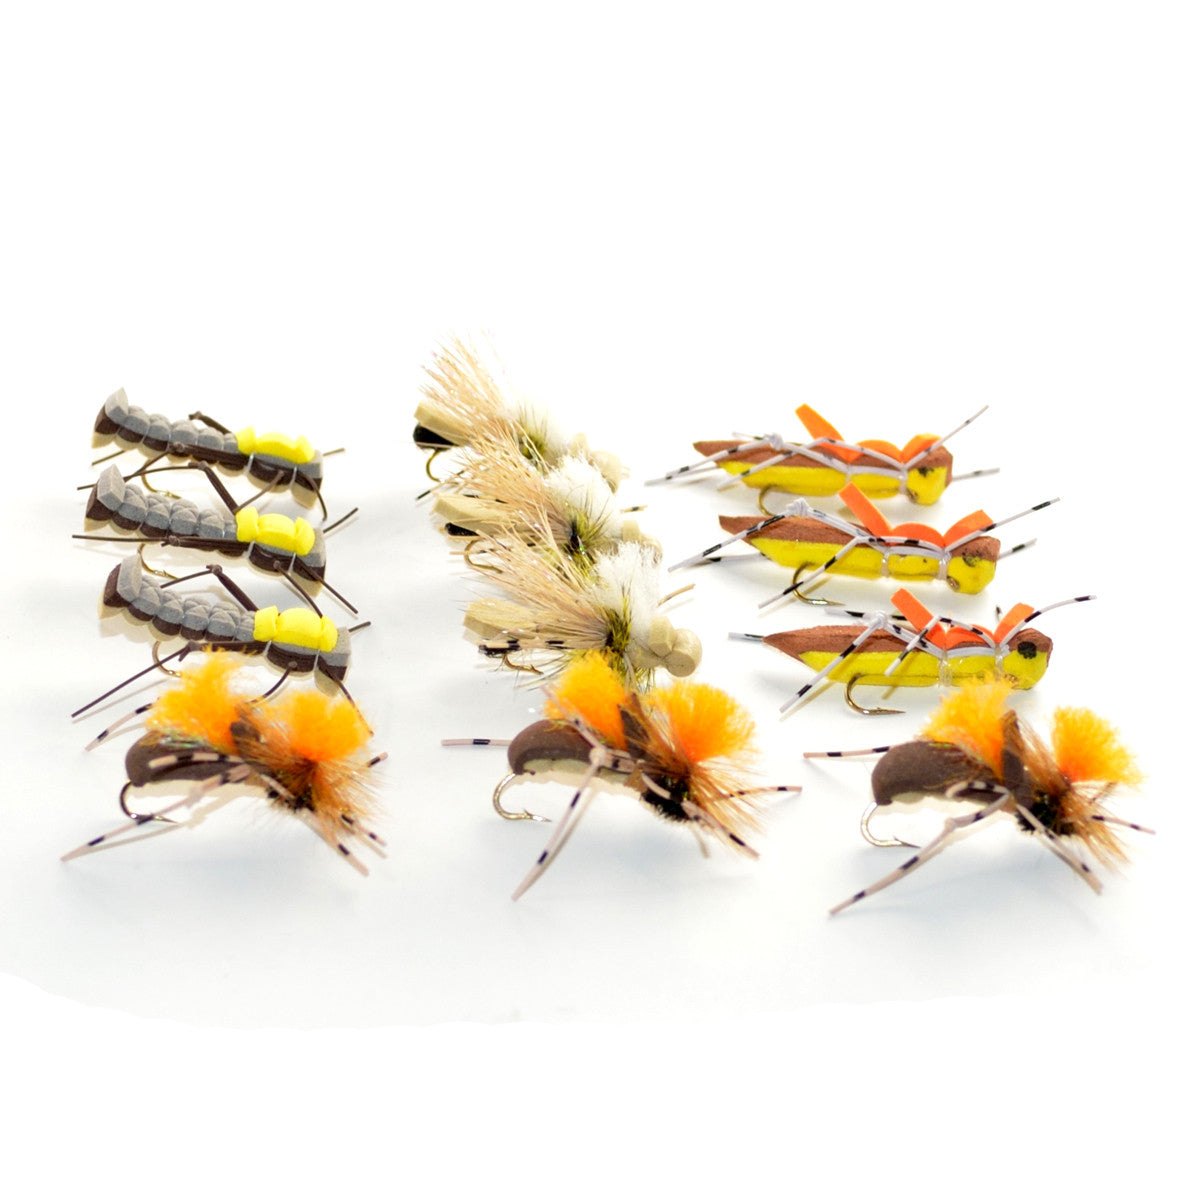 Surtido de moscas para trucha, cuerpo de espuma con tolva cuentagotas, 12 moscas, 4 patrones, colección de moscas para pesca de trucha 